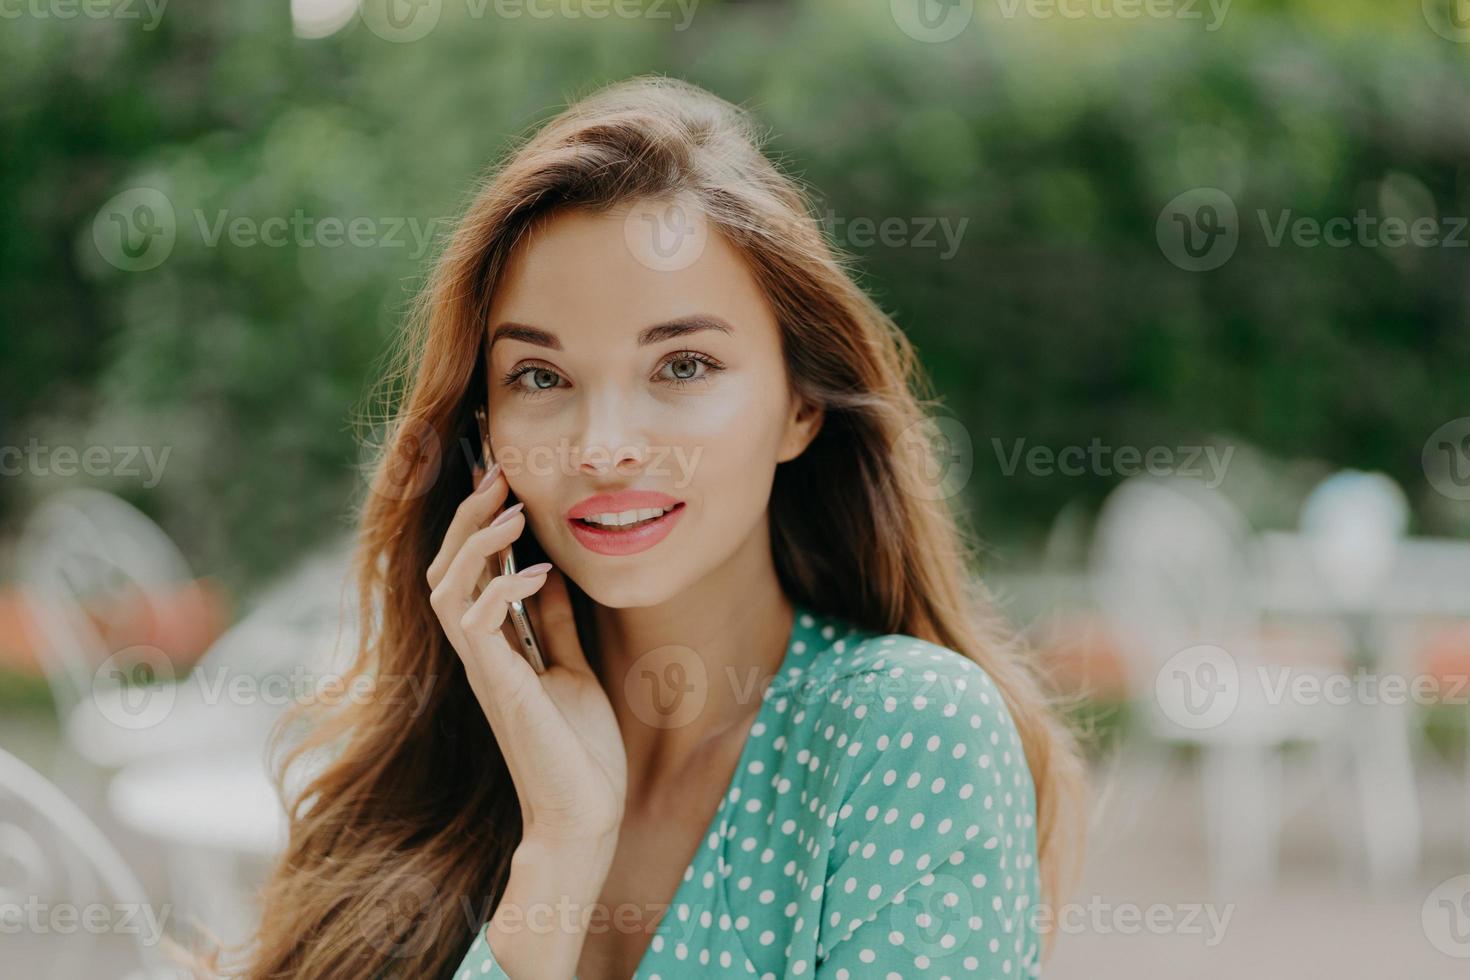 una foto horizontal de una mujer joven y bonita usa una blusa de lunares, hace una llamada telefónica, habla con un amigo, posa afuera contra un fondo verde borroso, usa lápiz labial. concepto de personas y comunicación